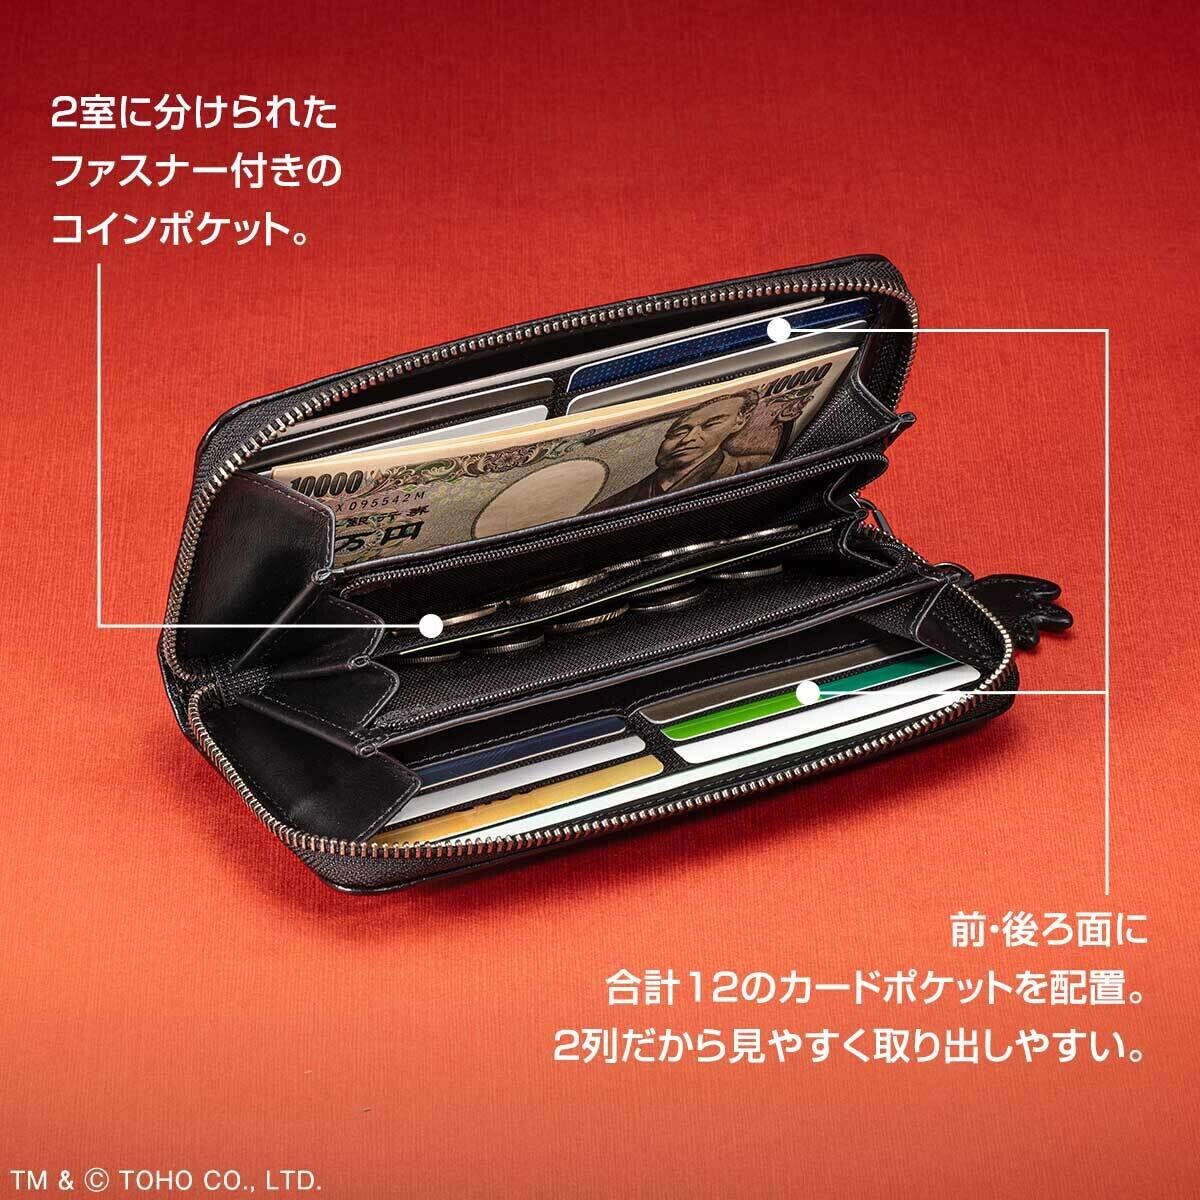 原型師の茨木彰氏が原型を製作、牛革に型押しを施した「ゴジラ70周年記念 公式牛革長財布」新発売！